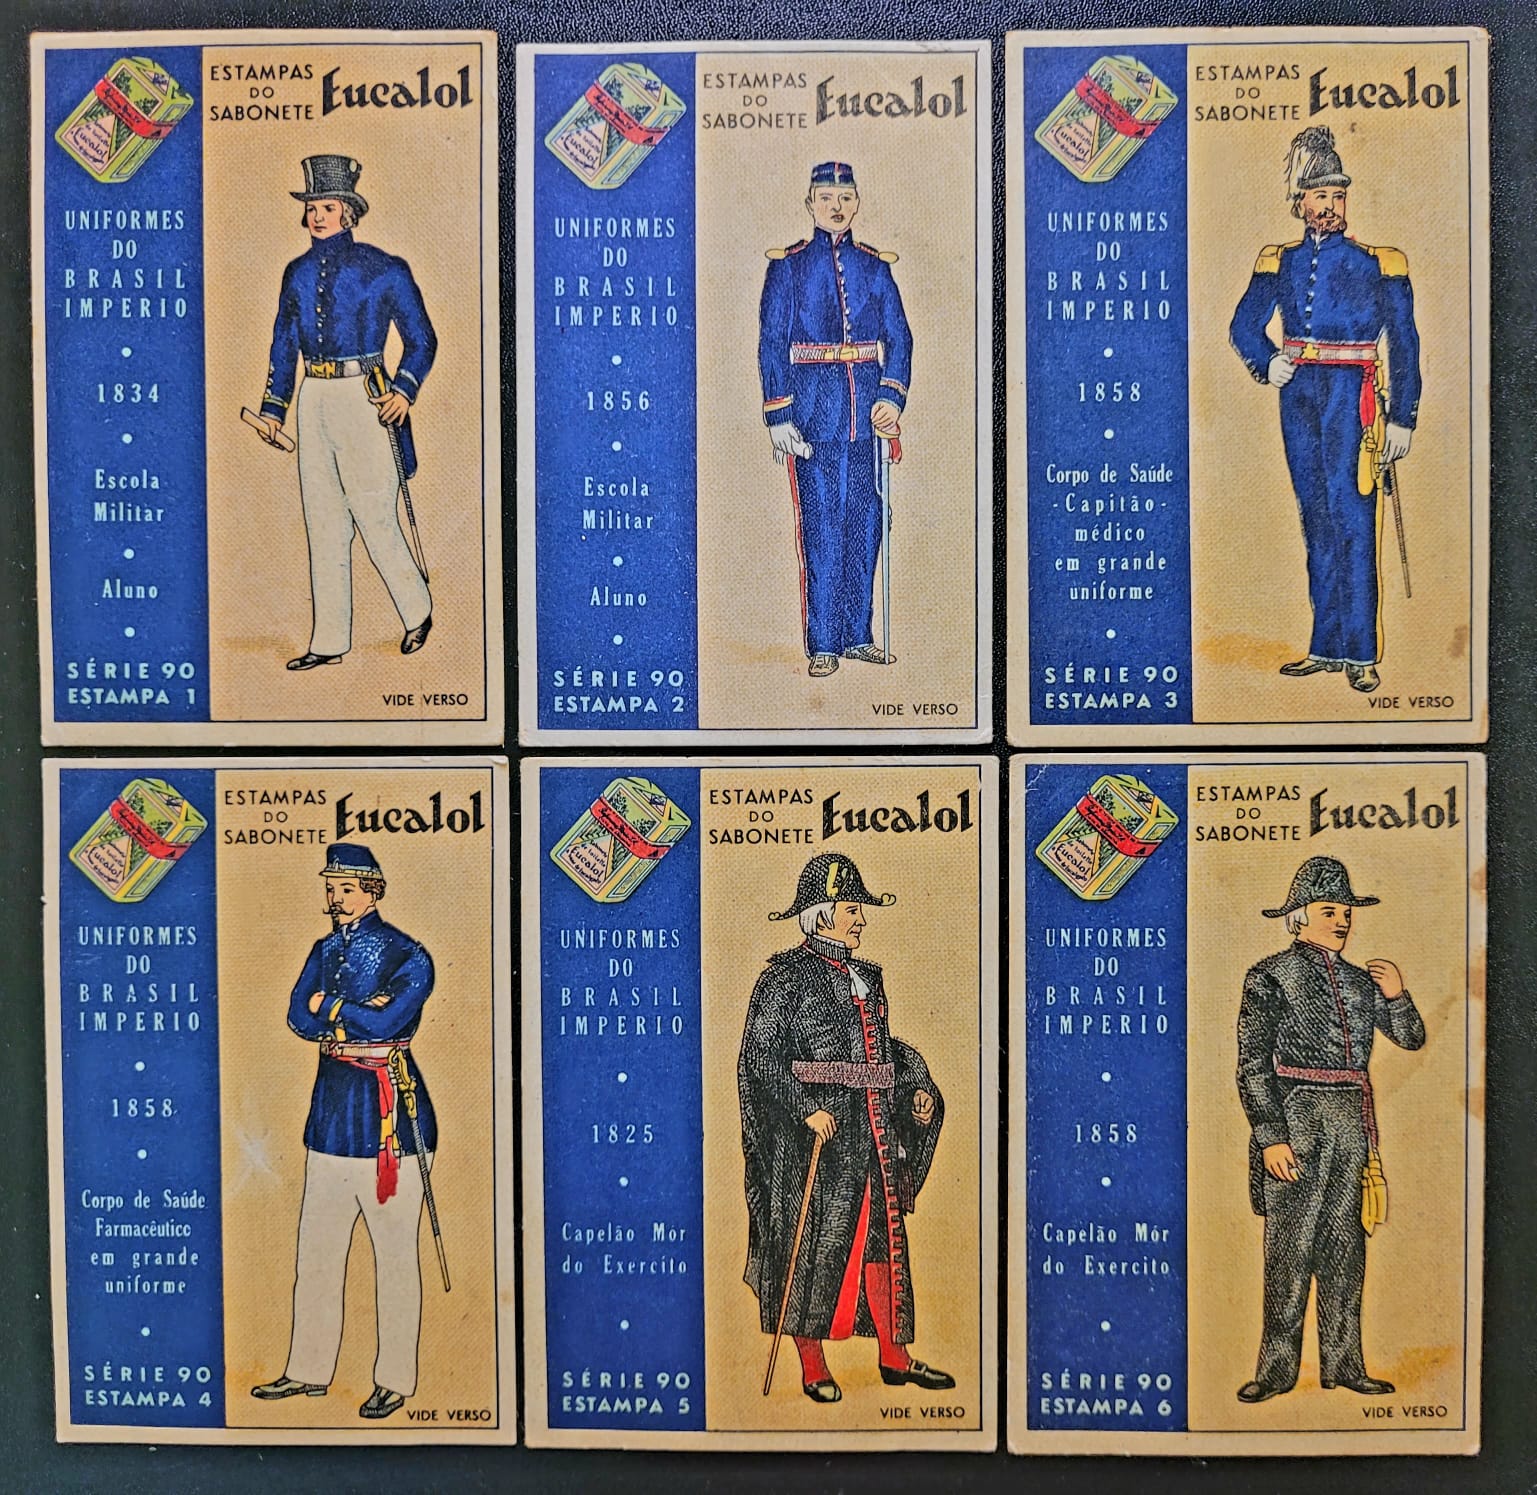 Estampas Eucalol Serie 90 Completa Uniformes do Brasil Imperio 1858 1 Casa do Colecionador